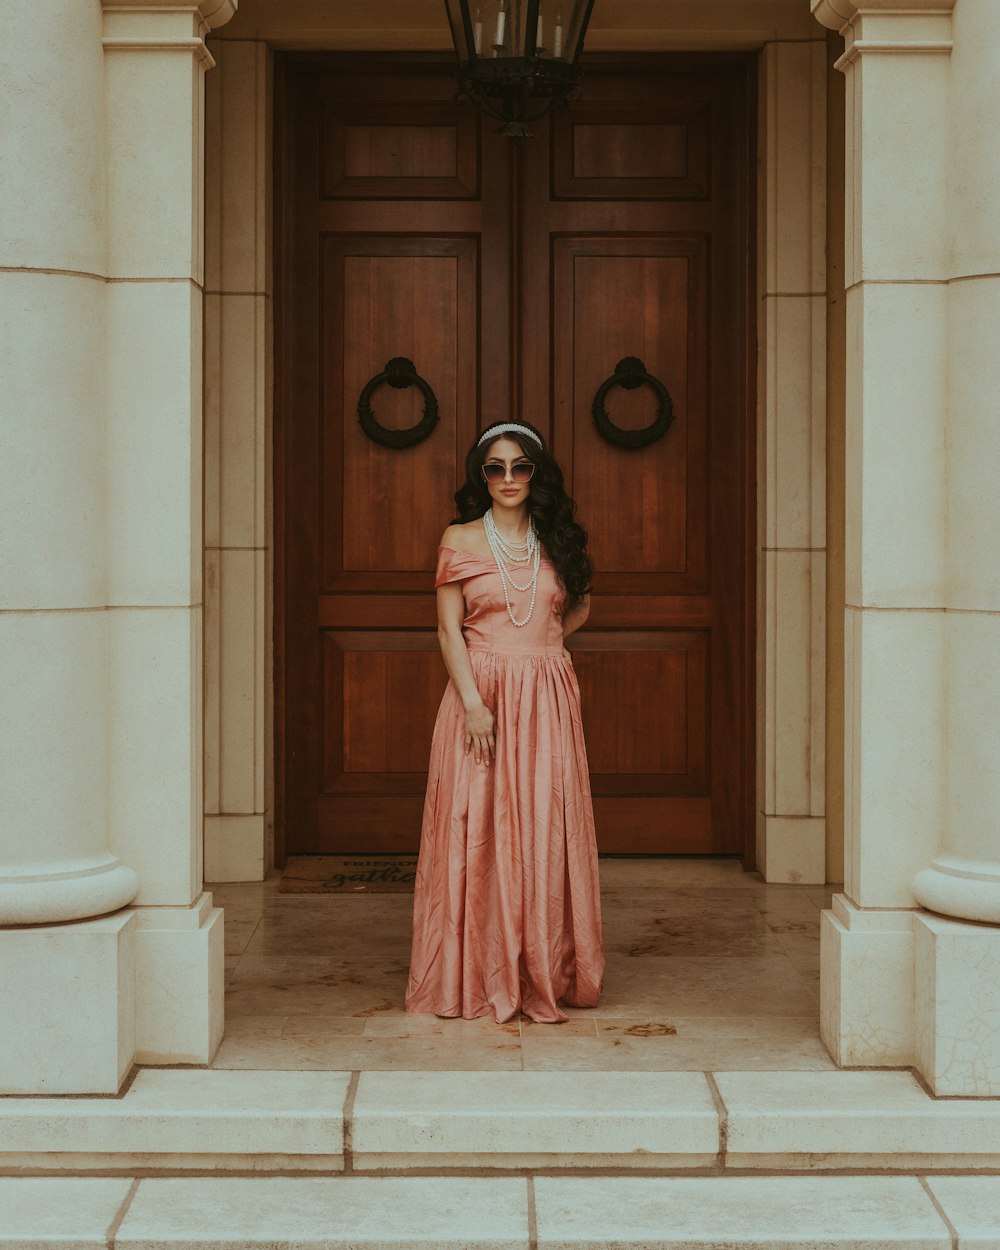 Eine Frau im rosa Kleid steht vor einer Tür